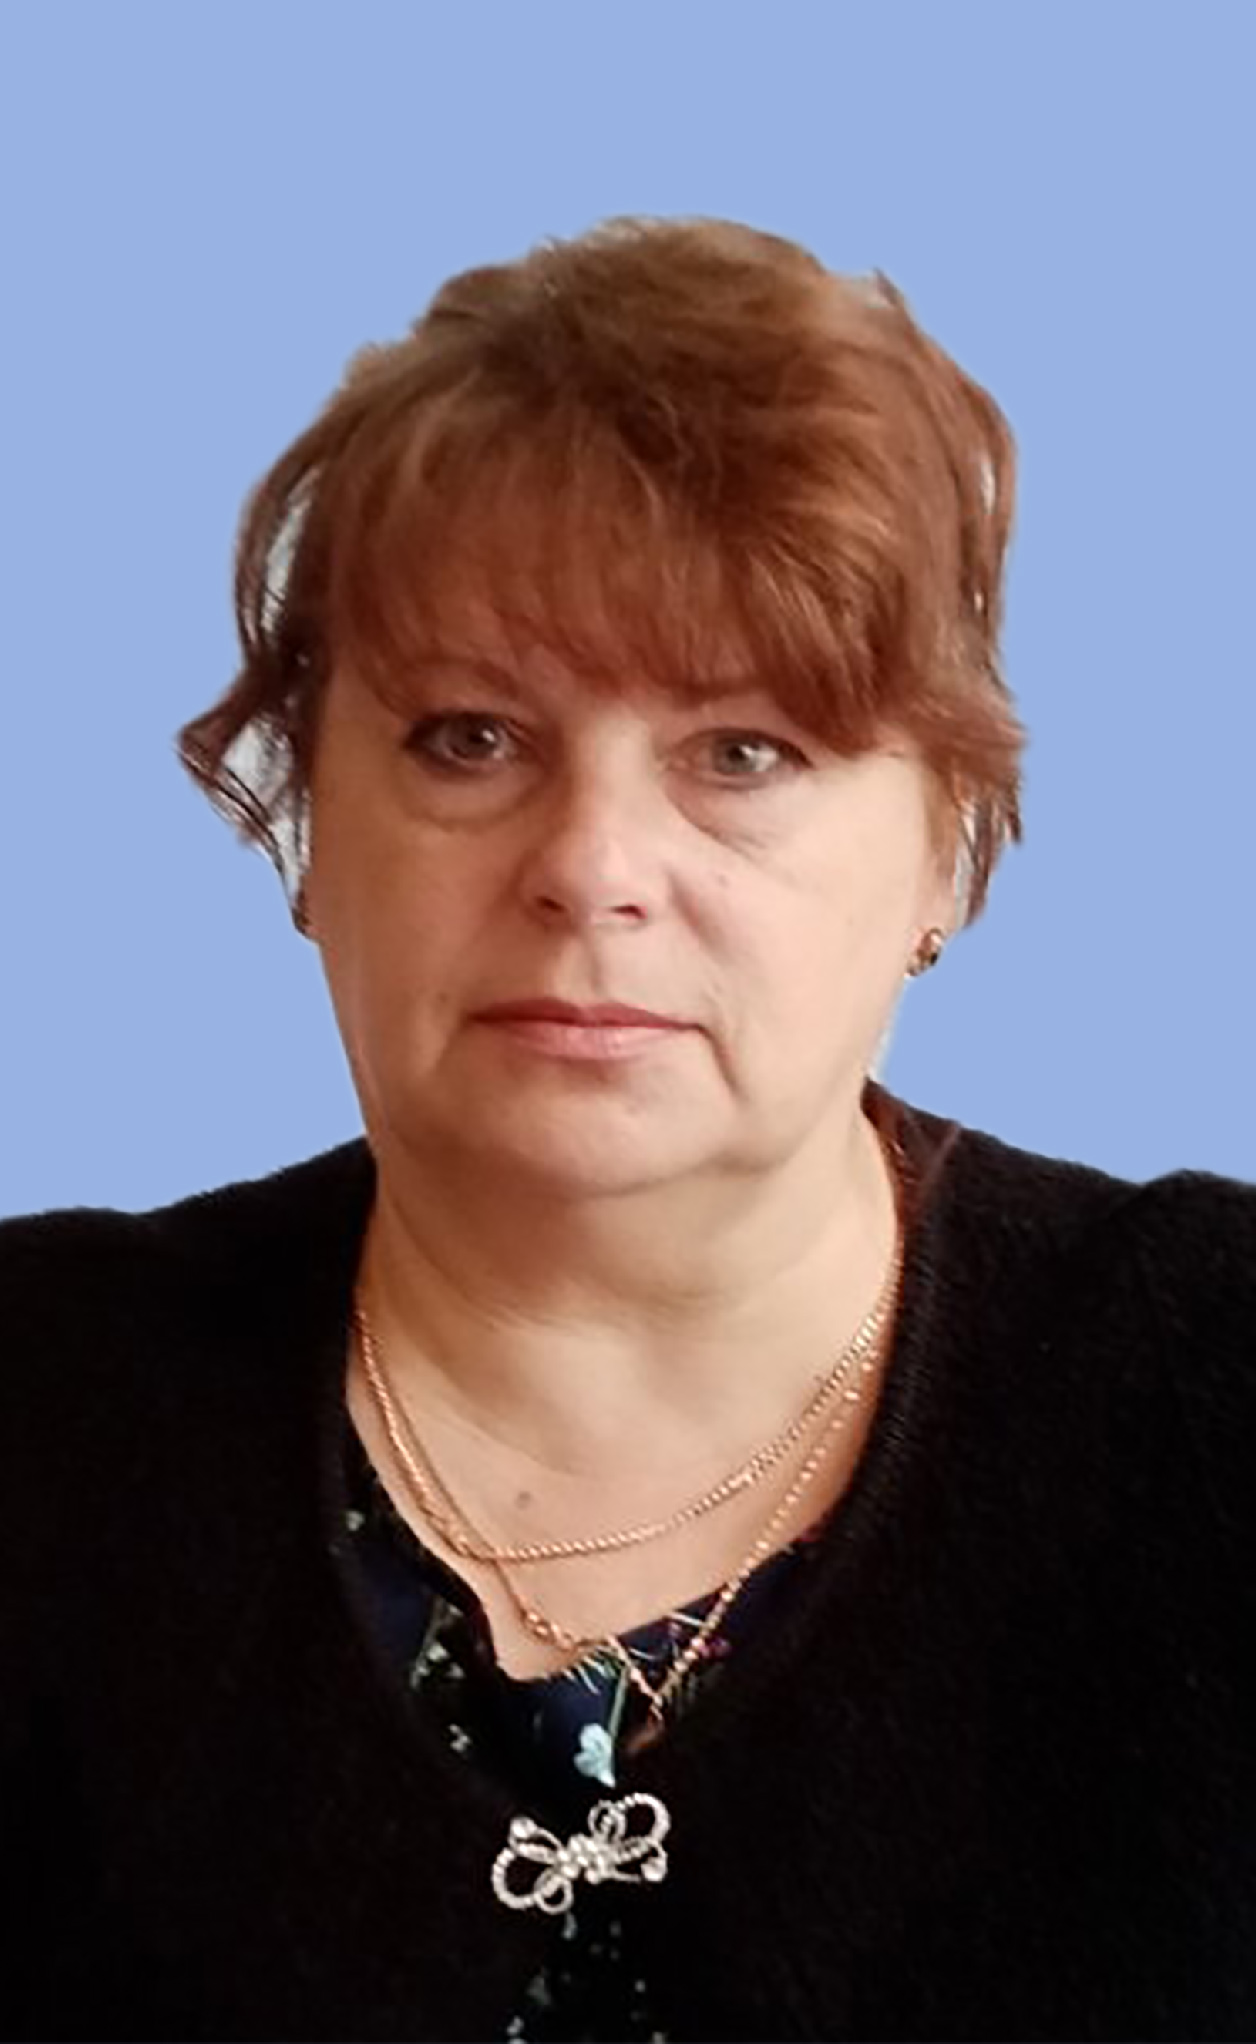 Кузнецова Ирина Викторовна.